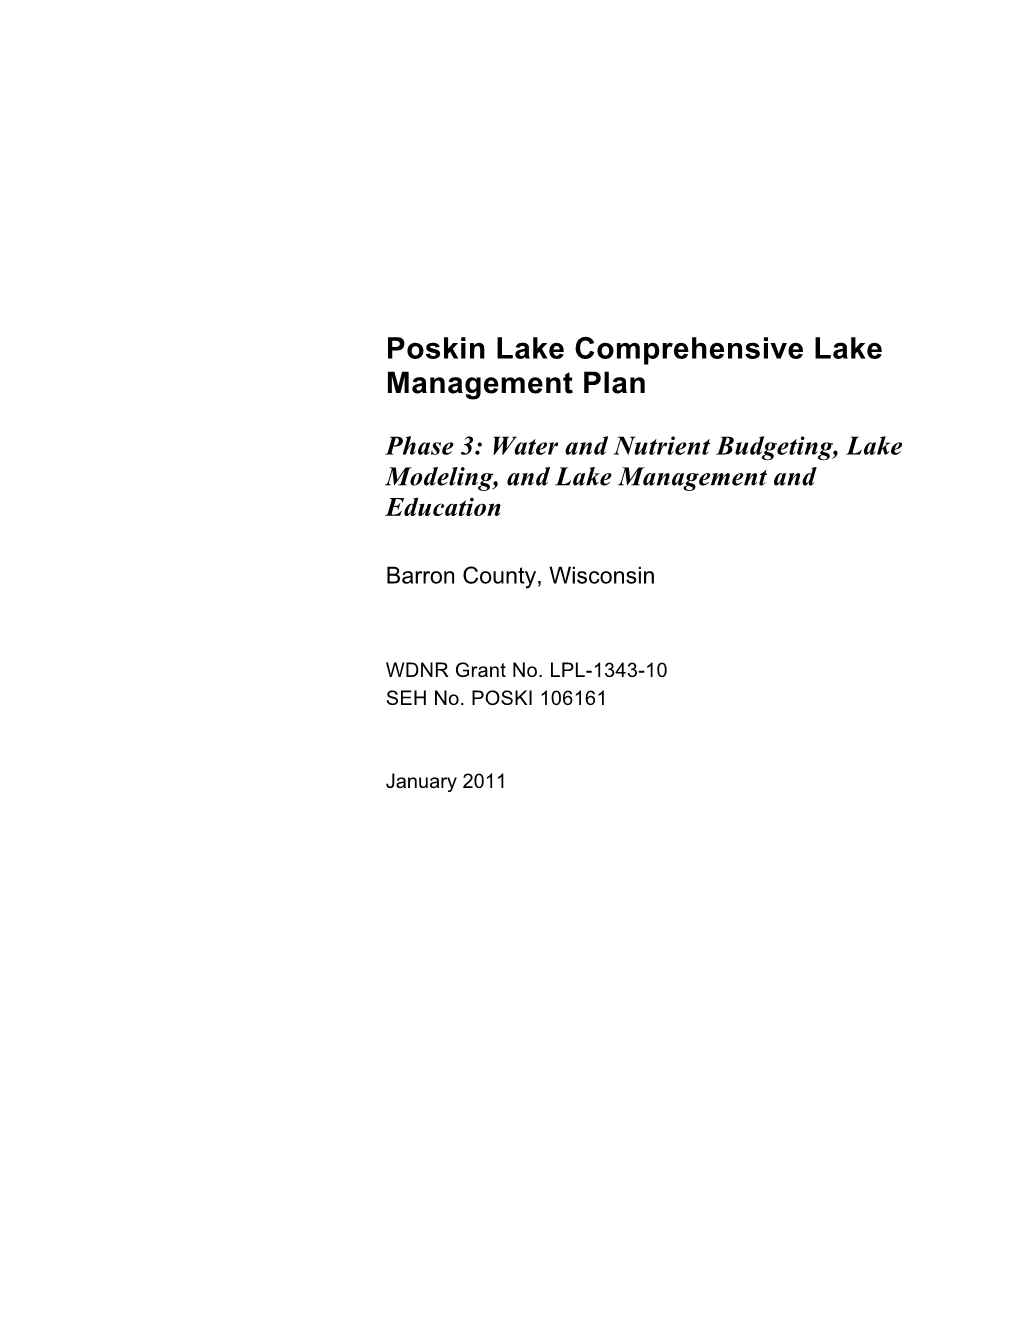 Poskin Lake Comprehensive Lake Management Plan